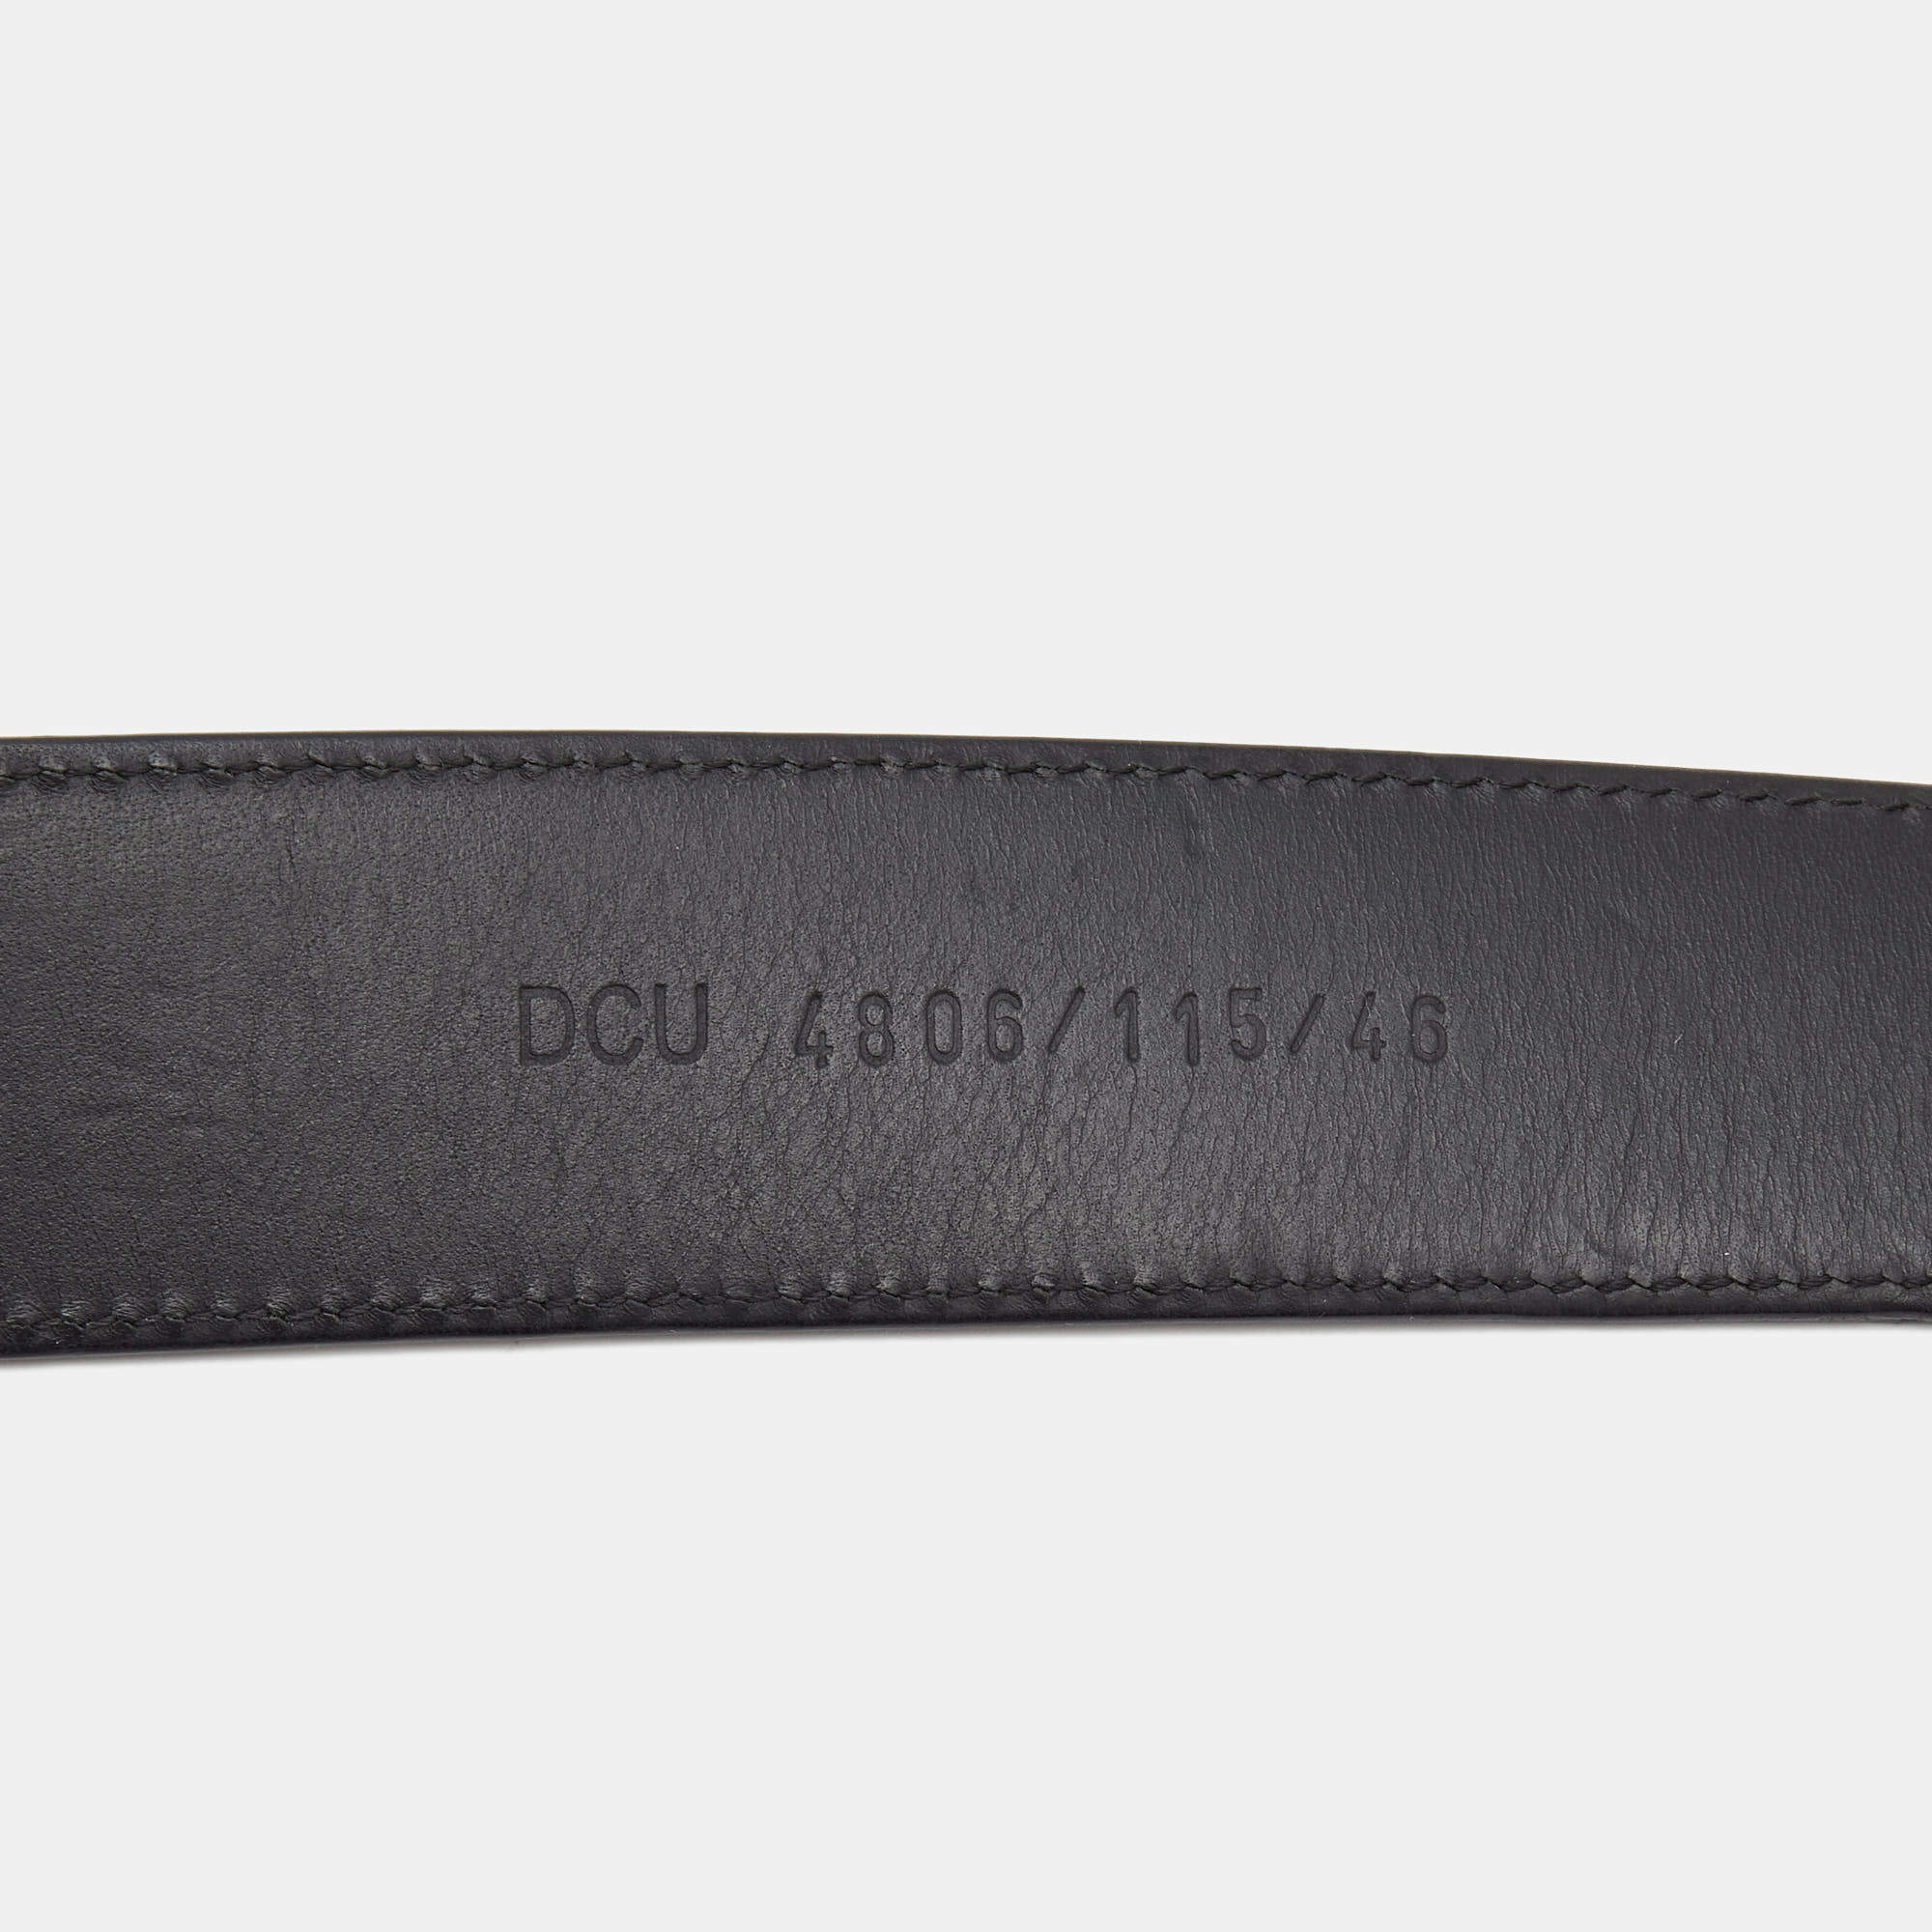 new VERSACE La Medusa ruthenium silver buckle black leather belt 115cm  44-48